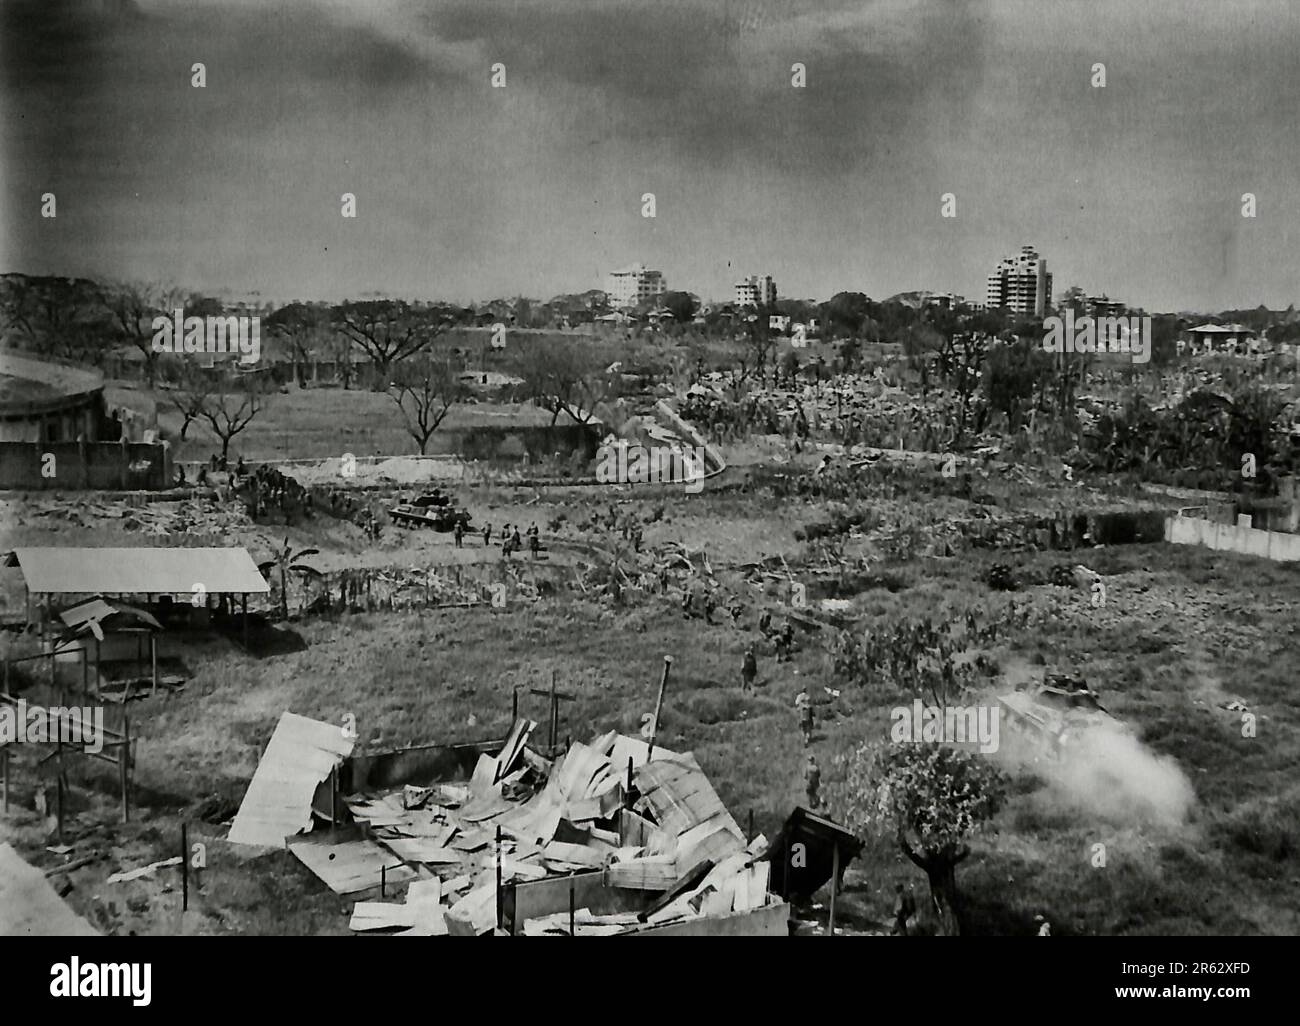 Blick vom Dach des La Salle Girls College in Manila, mit Blick auf das Rizal Stadium im Hintergrund. Hier sind Panzer, die auf dem Fußballfeld einmarschieren, mit Truppen dahinter. Der Graben in der Mitte des Bildes stellte eine gewaltige Panzerbarriere dar, bis ein amerikanischer Bulldozer auftauchte und ihn mit Erde füllte. Februar 1945 Stockfoto